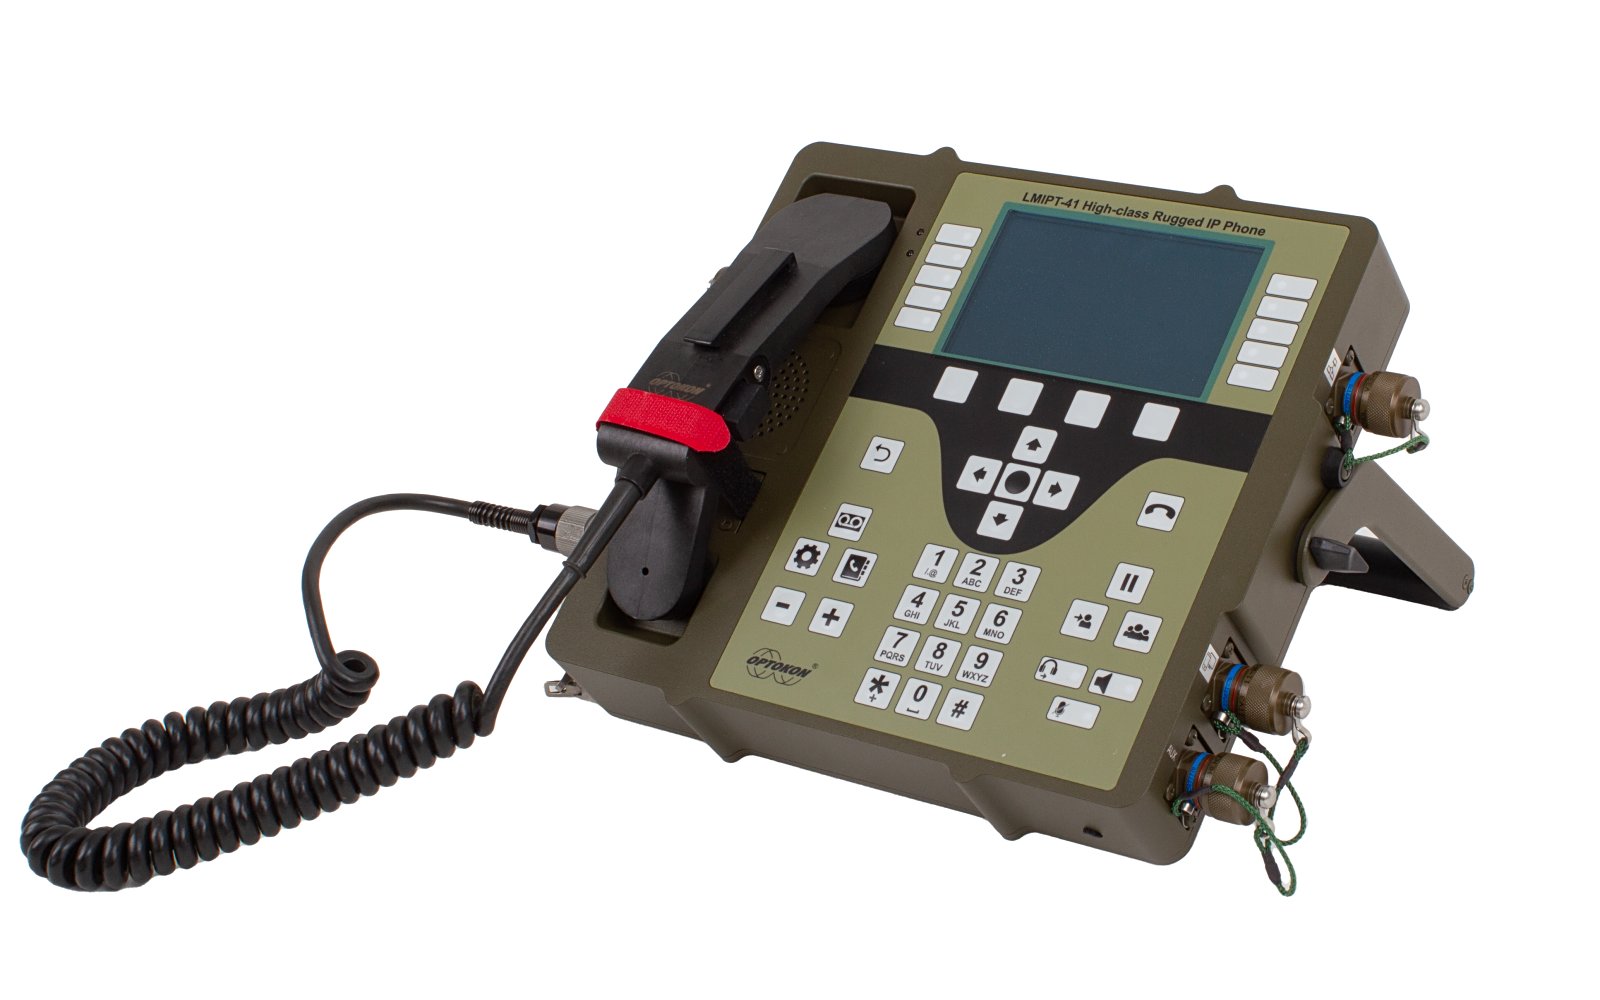 LMIPT-41 High-class Rugged IP Phone